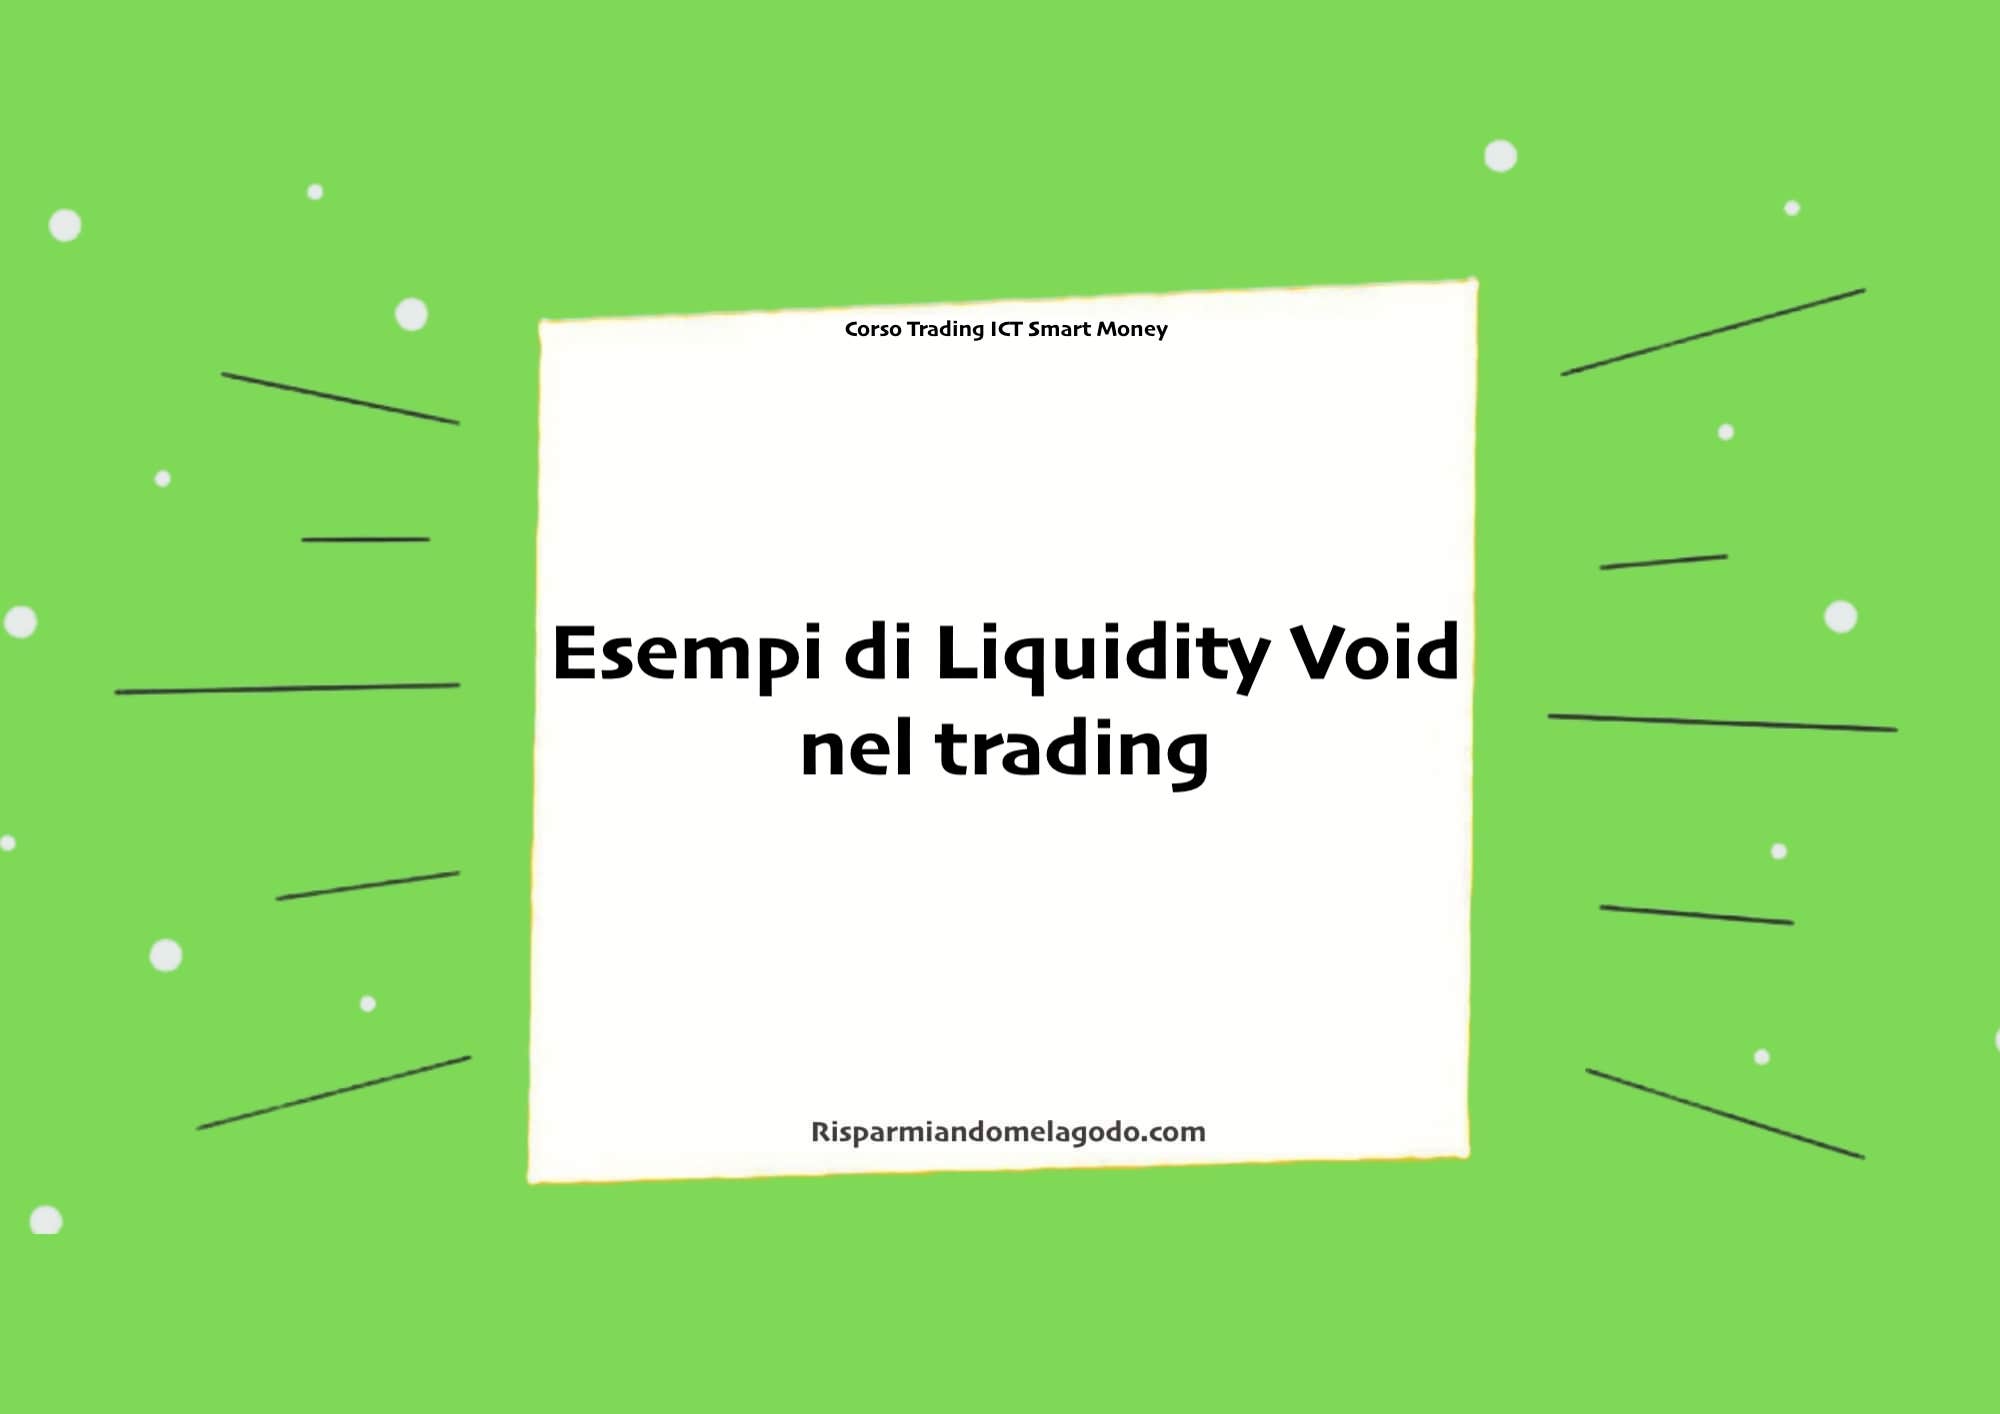 Esempi di Liquidity Void nel trading